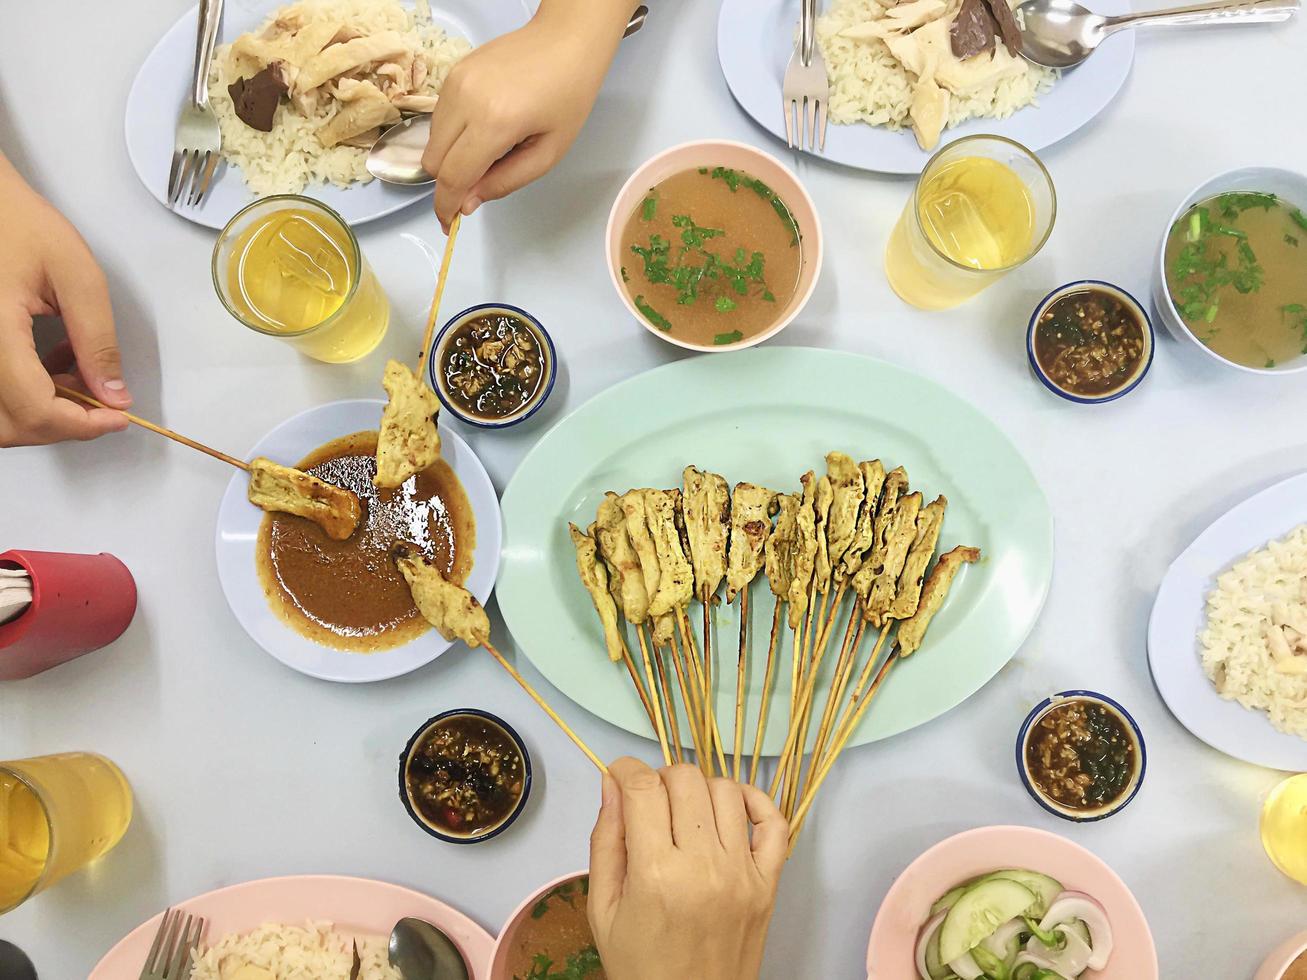 la vista superior del almuerzo familiar incluye un juego de arroz con pollo y un palito de cerdo satay - vista superior asiática concepto de comida feliz foto